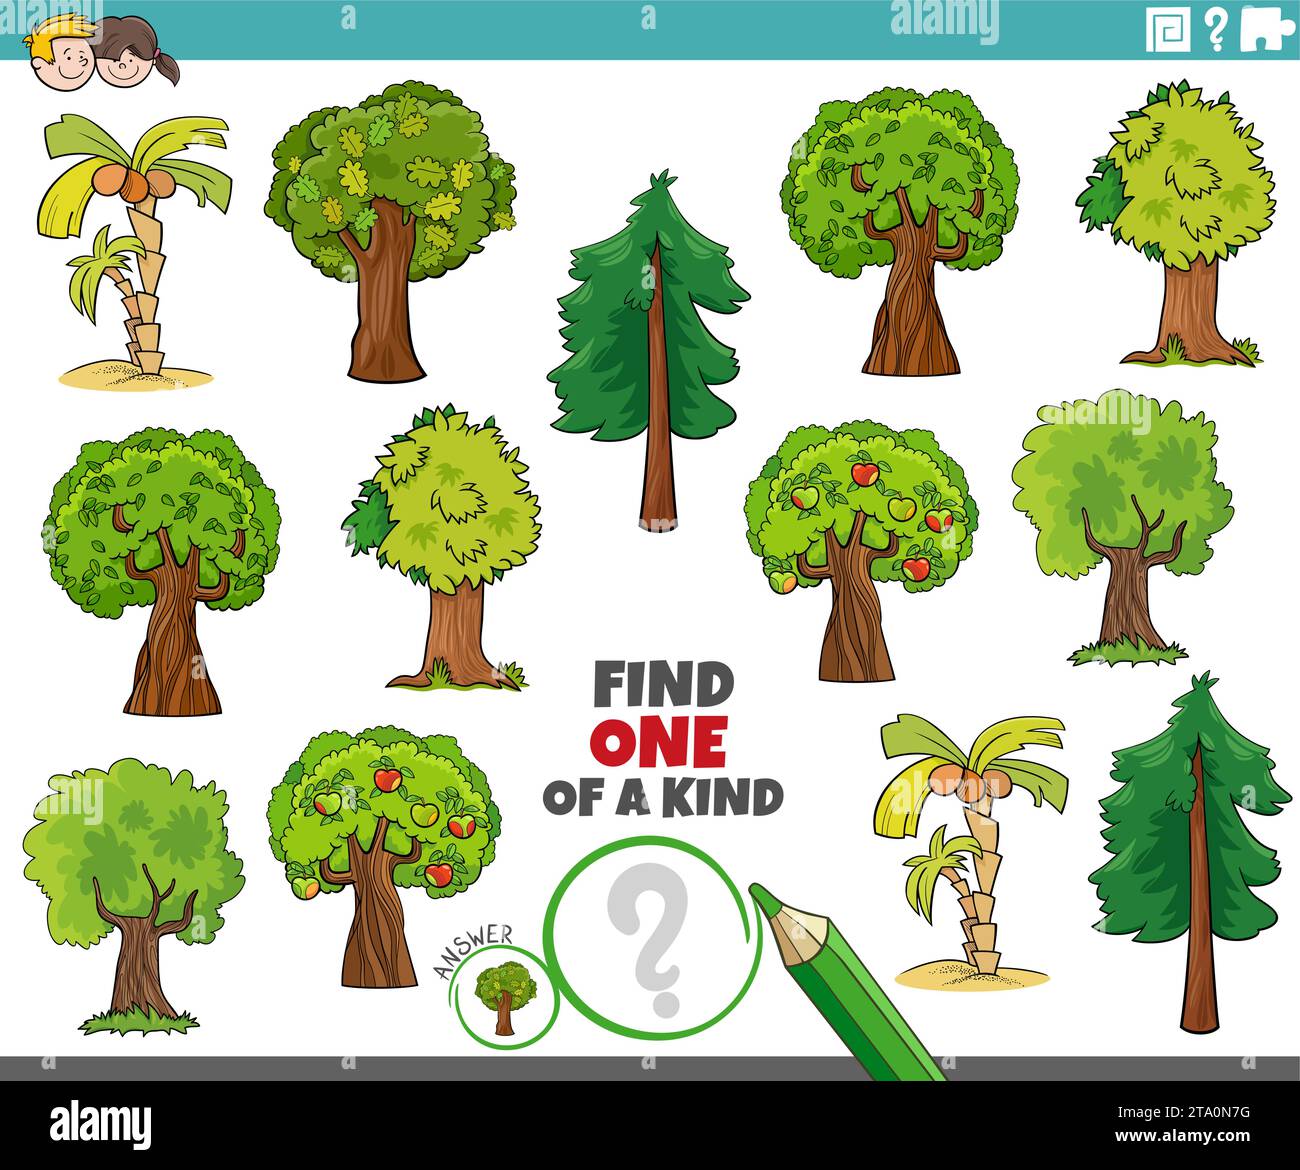 Zeichentrickillustration einer Art Bilderpädagogik mit Bäumen Stock Vektor